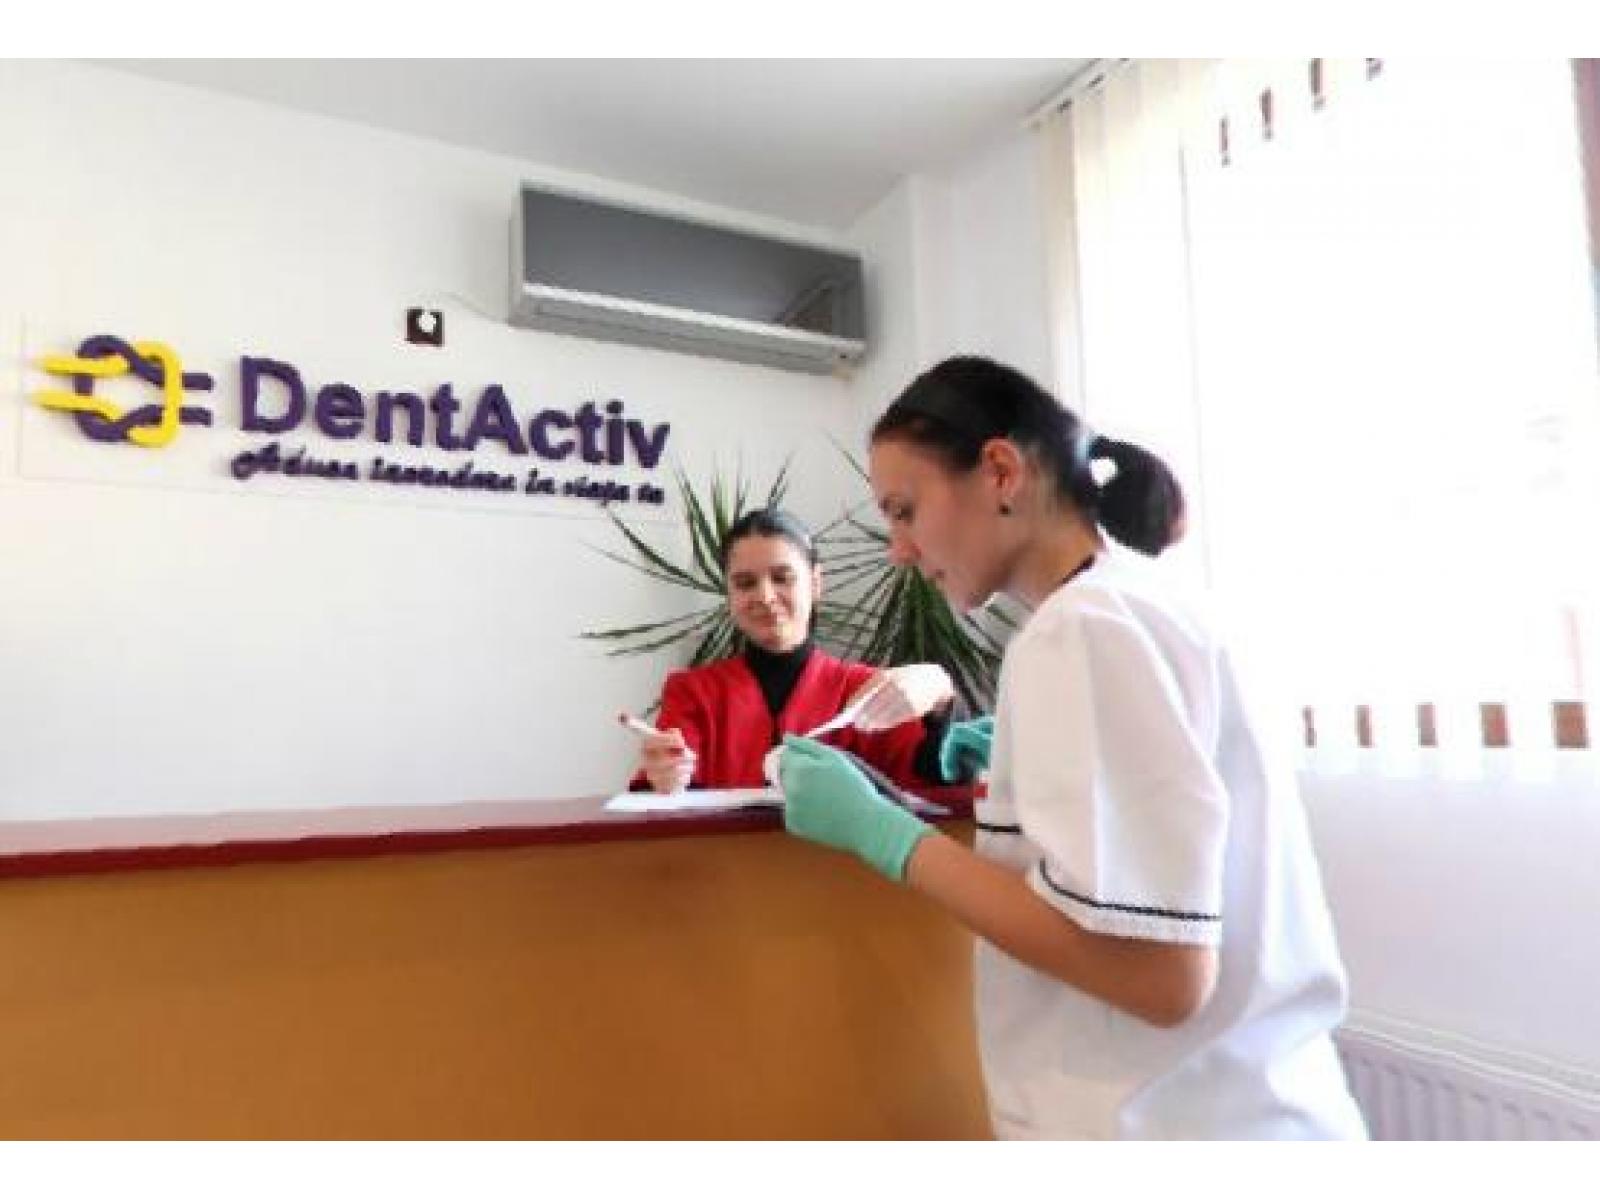 DentActiv - dentactiv3.JPG